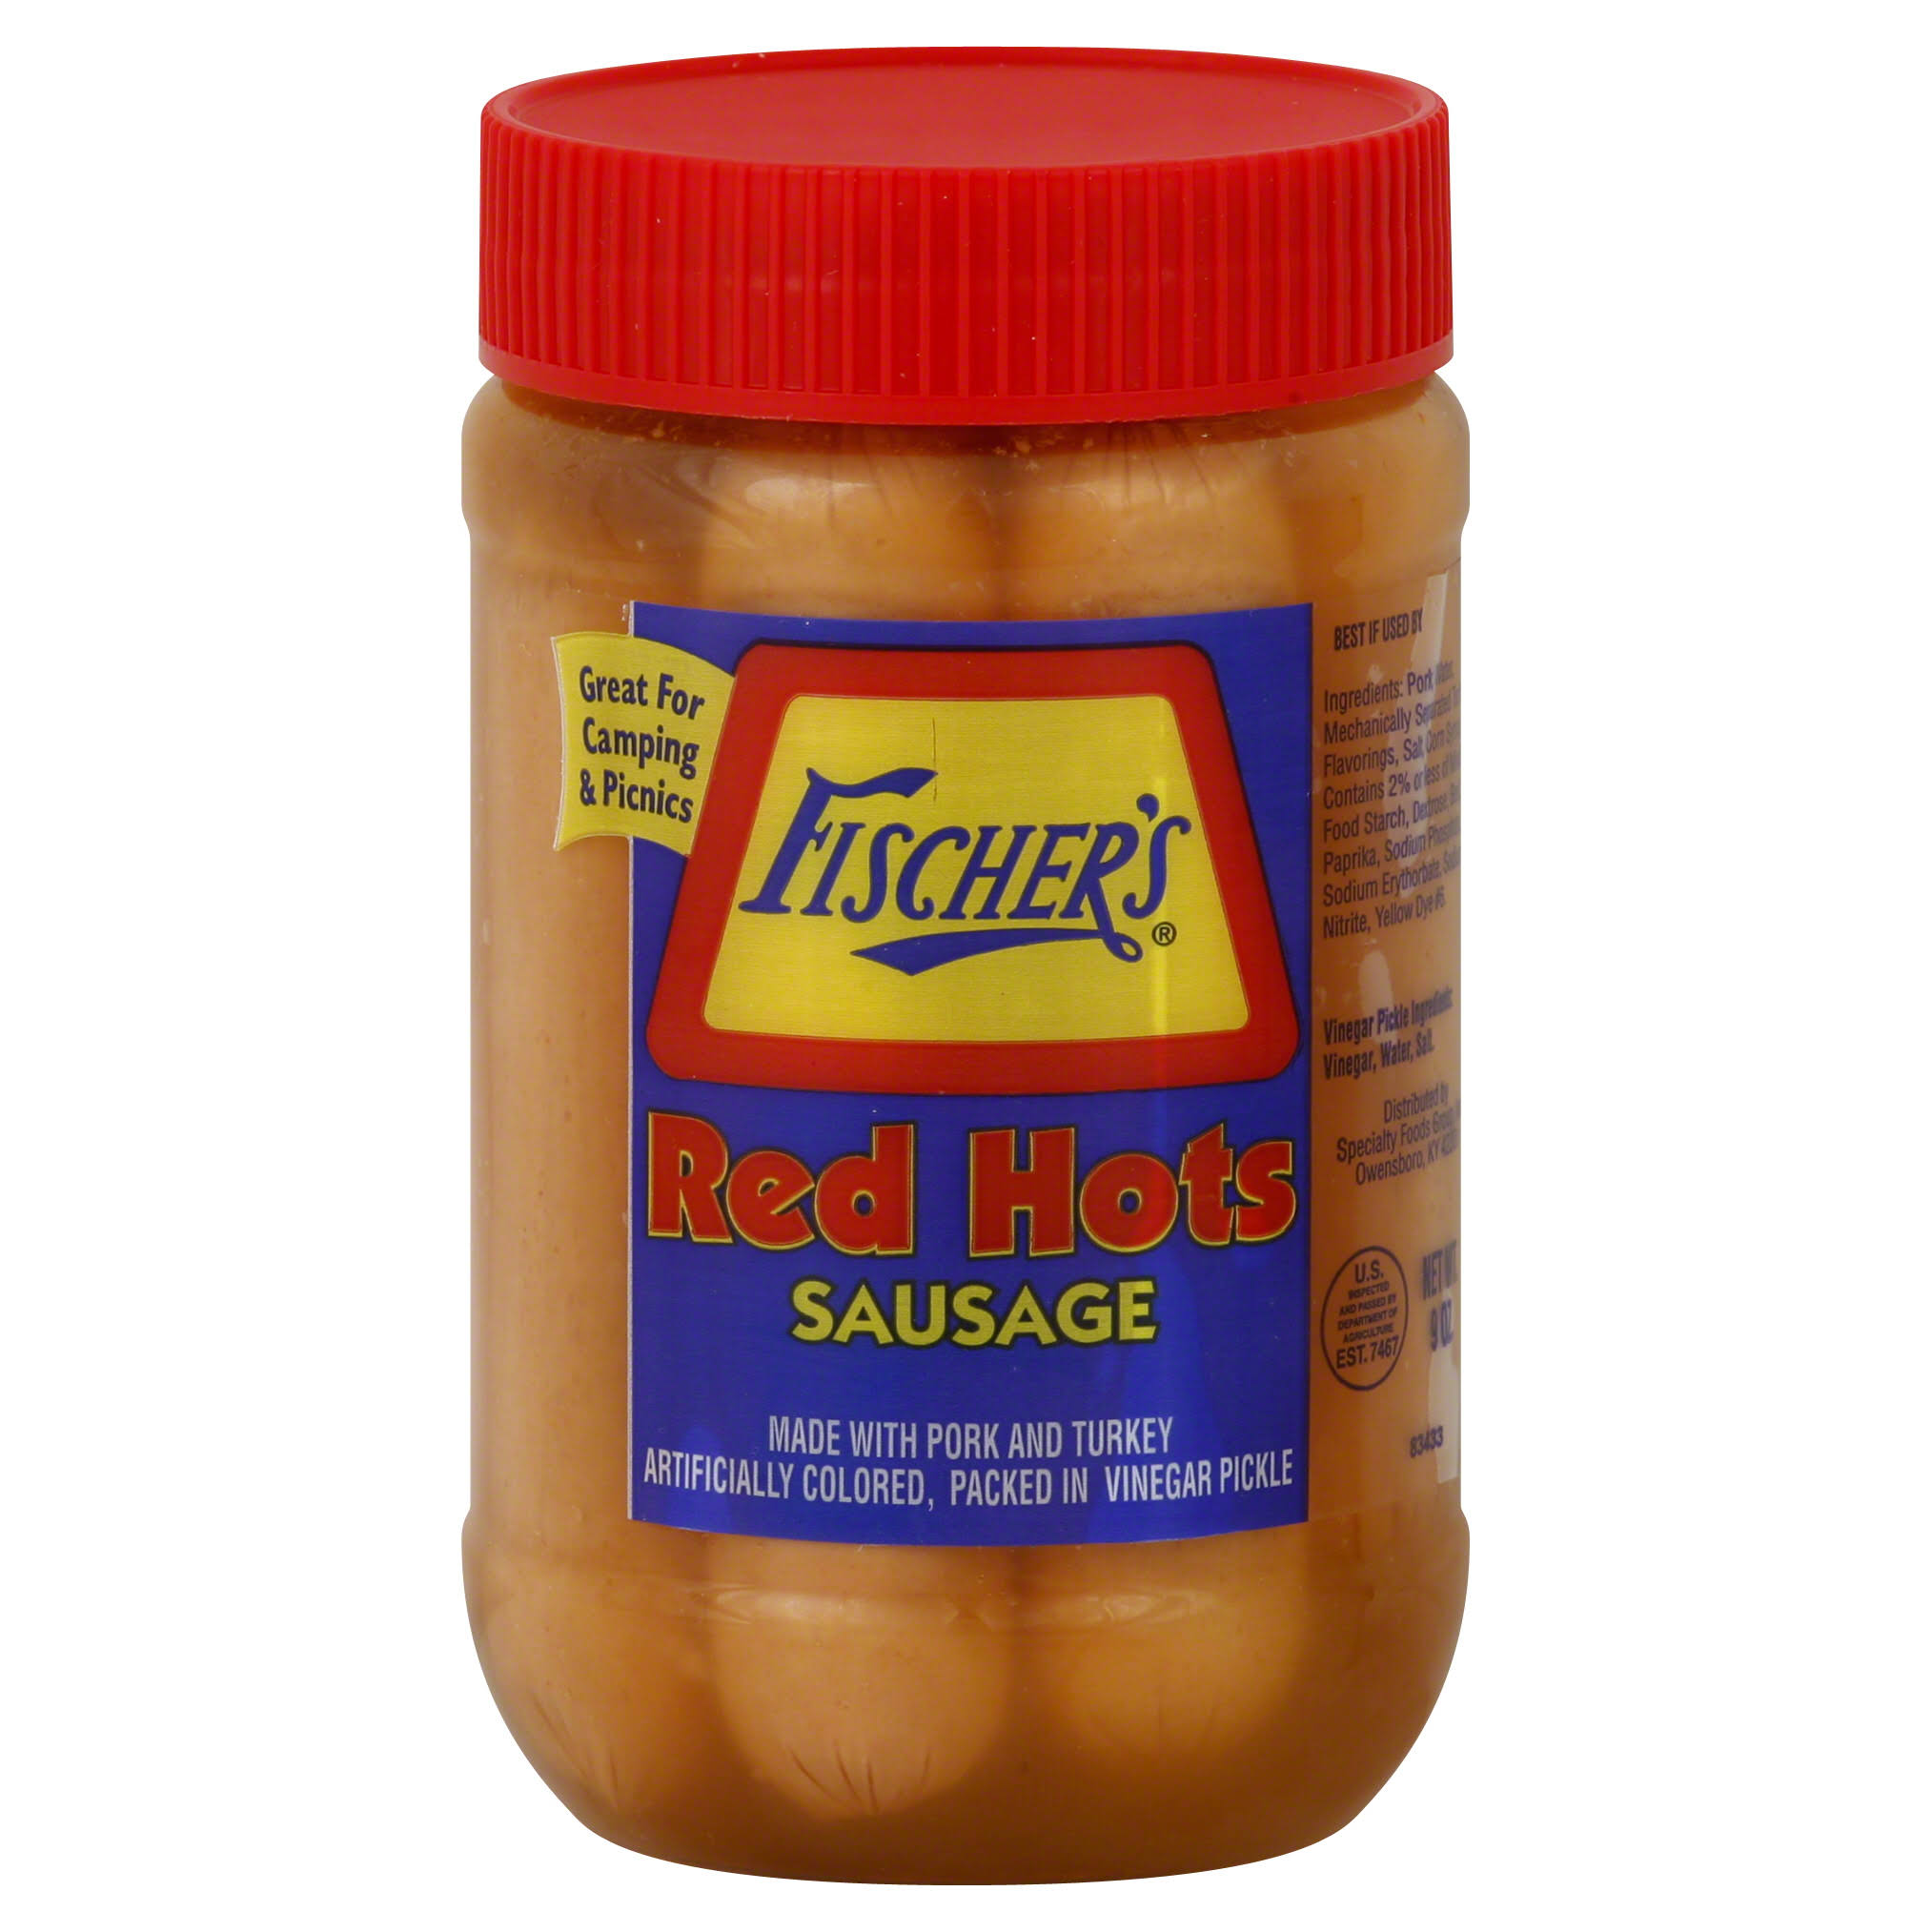 Fischers Sausage, Red Hots - 9 oz